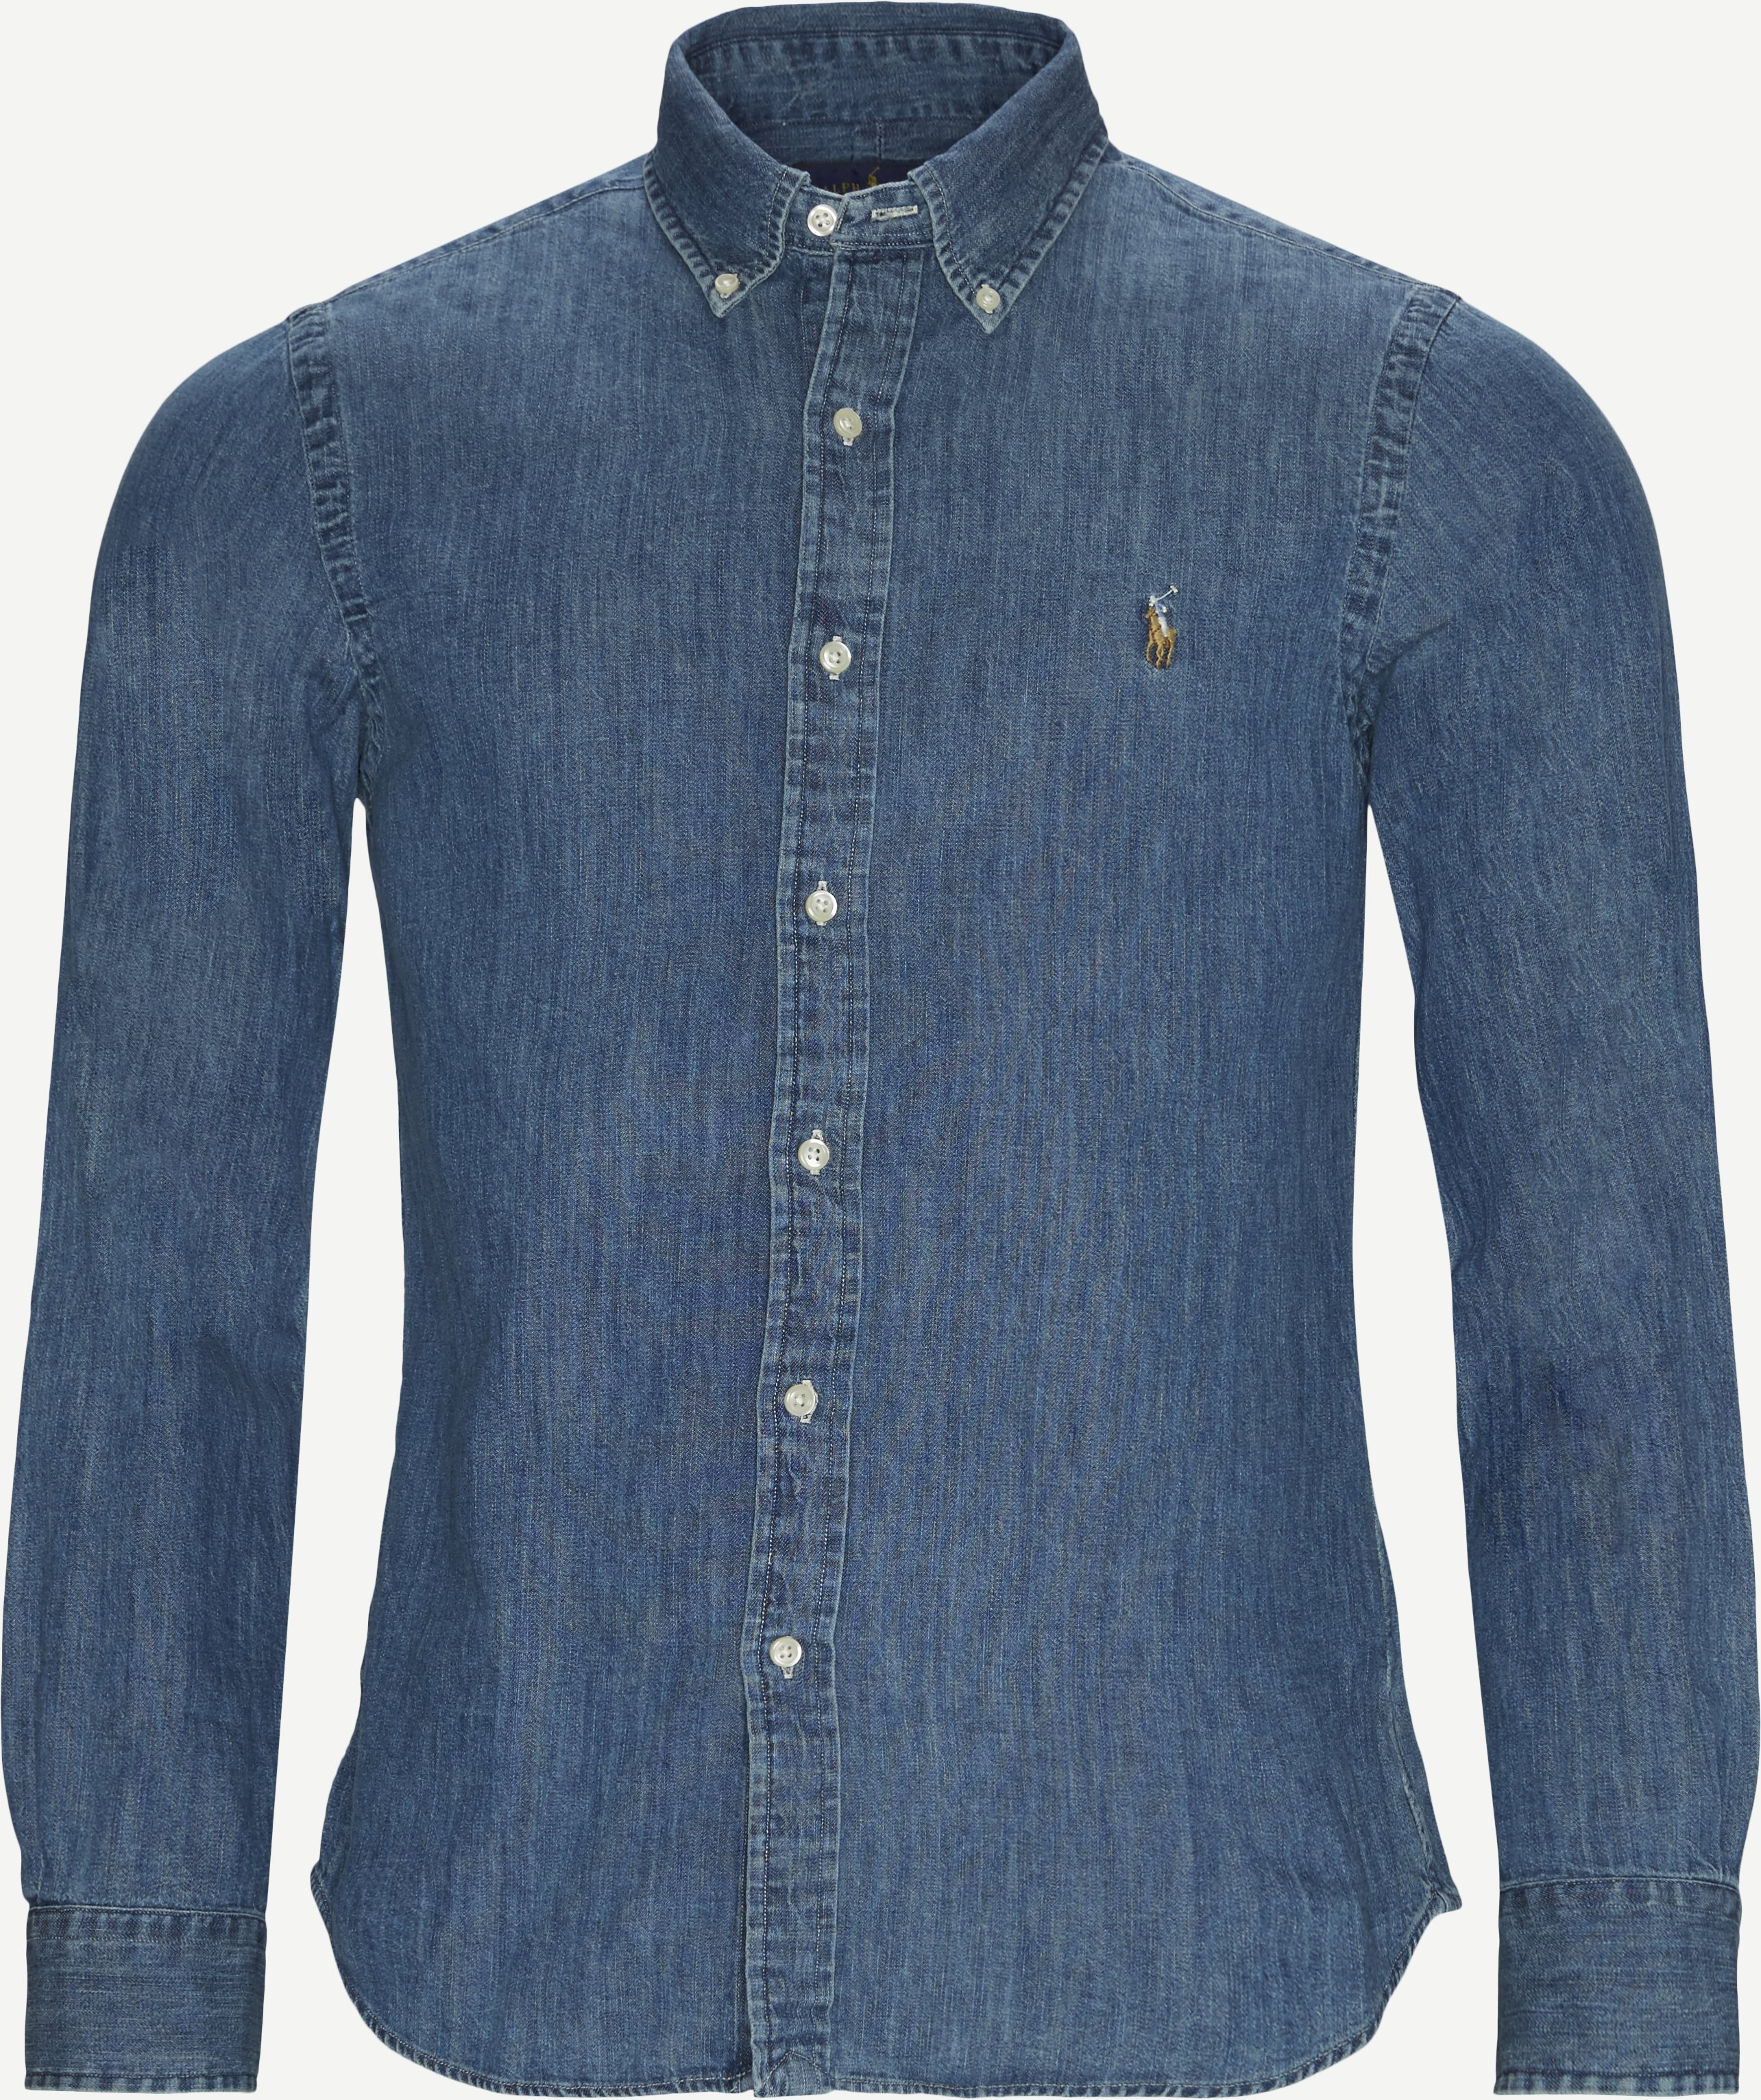 Jeanshemd mit Knöpfen - Hemden - Slim fit - Jeans-Blau